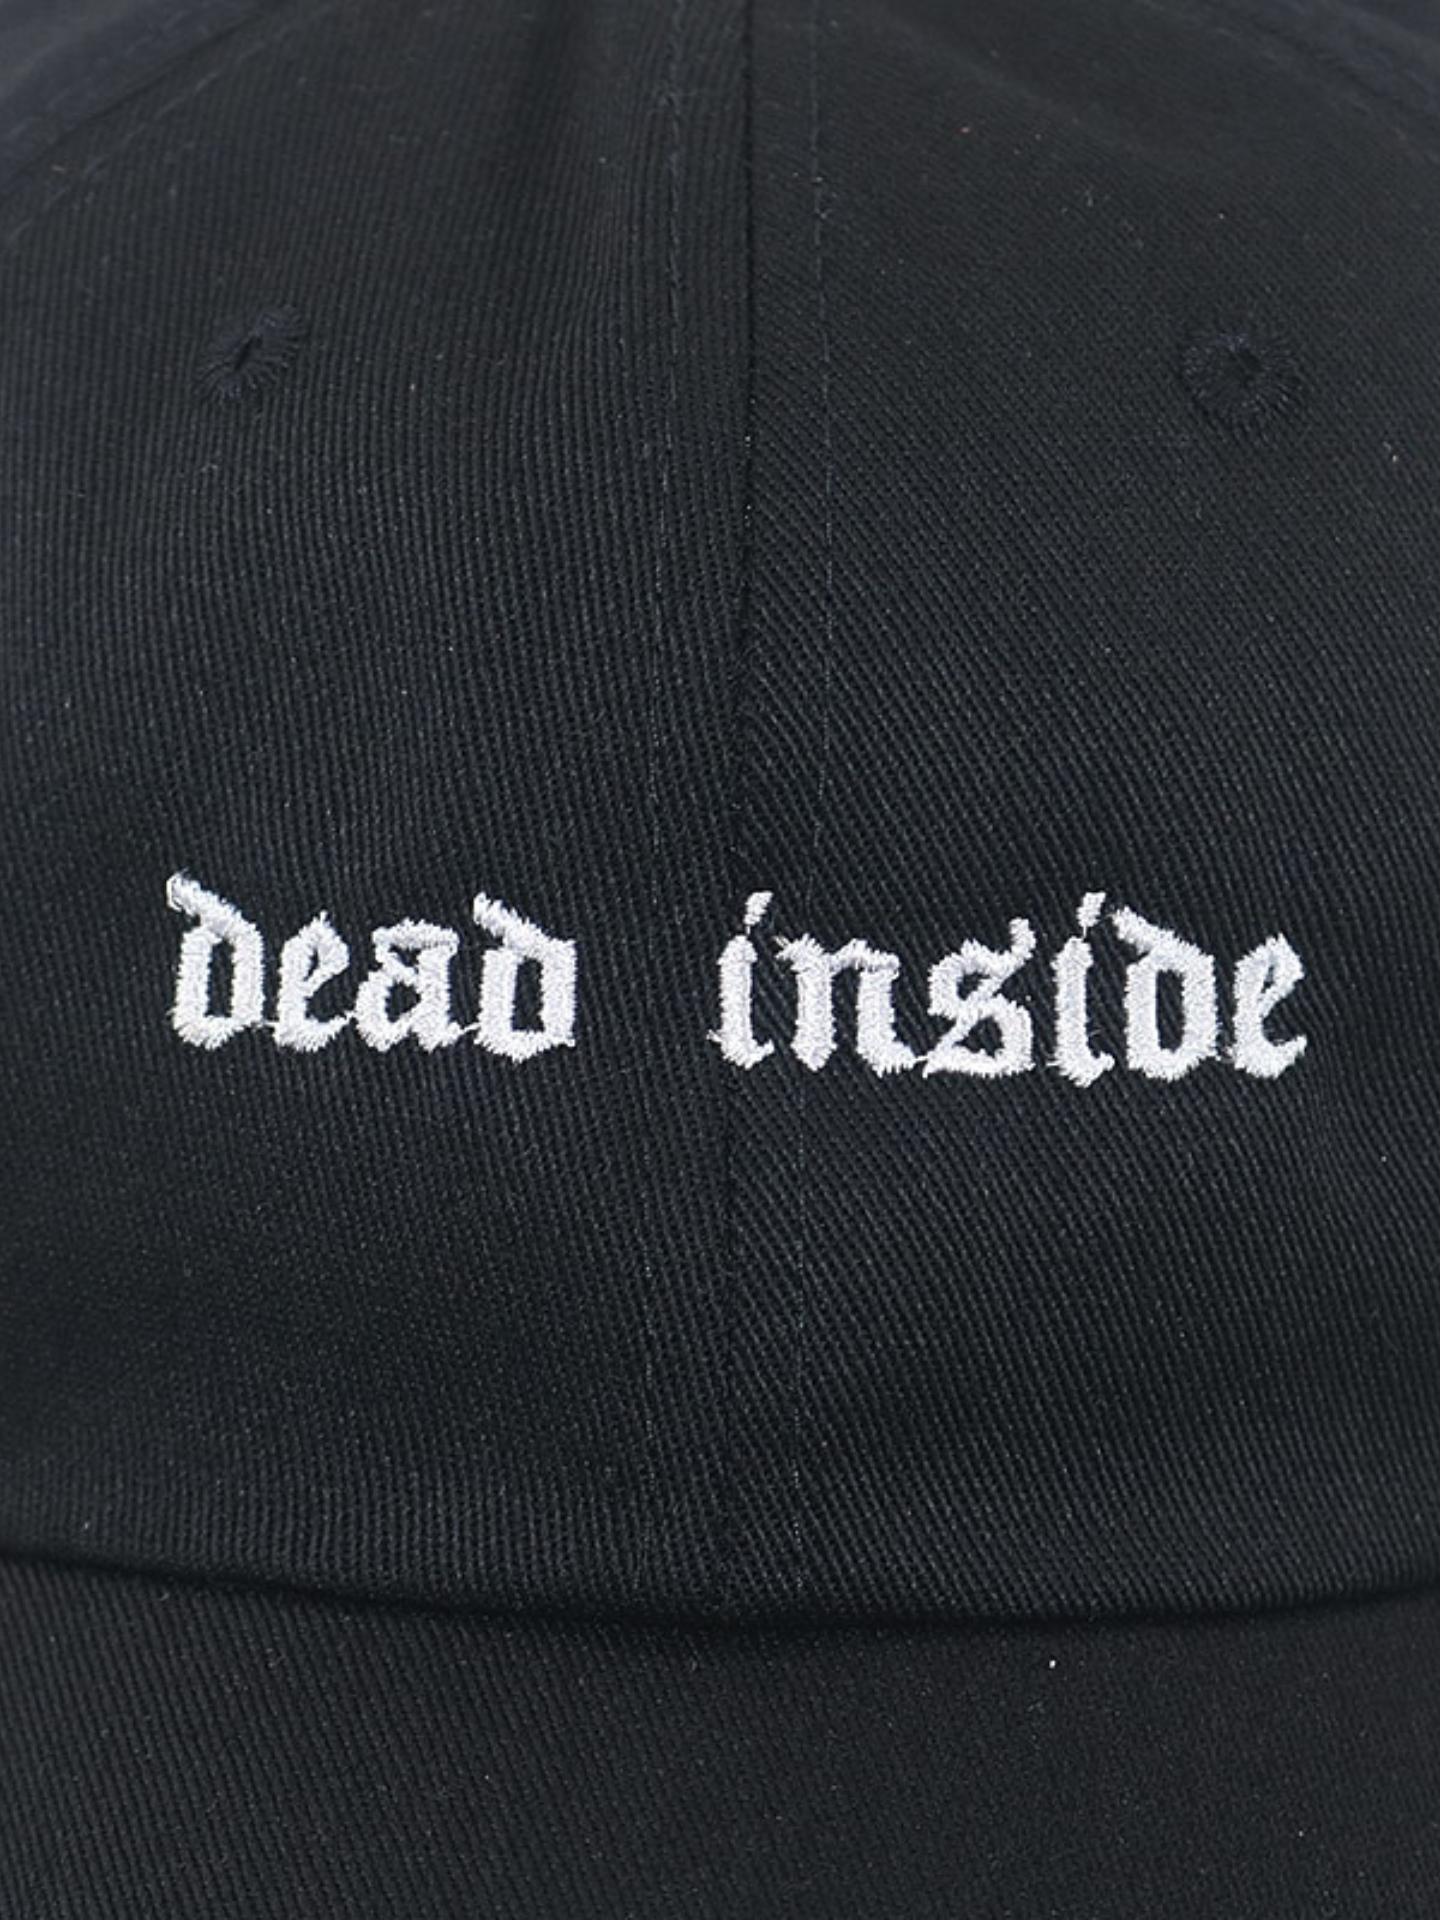 Dead Inside Cap